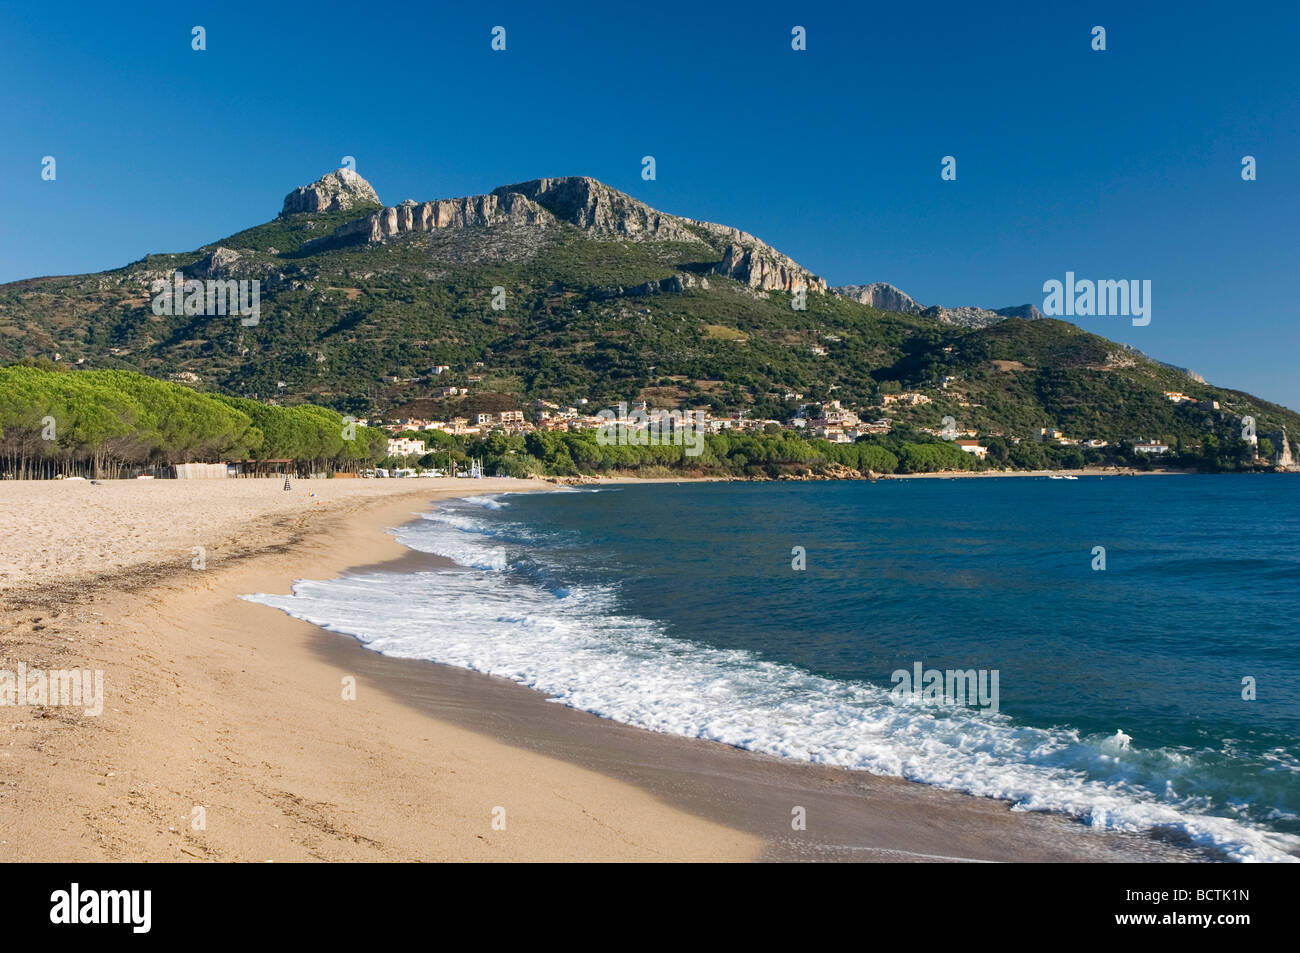 Sandy beach, coast, Bay of Santa Maria Navarrese, Sardinia, Italy, Europe Stock Photo